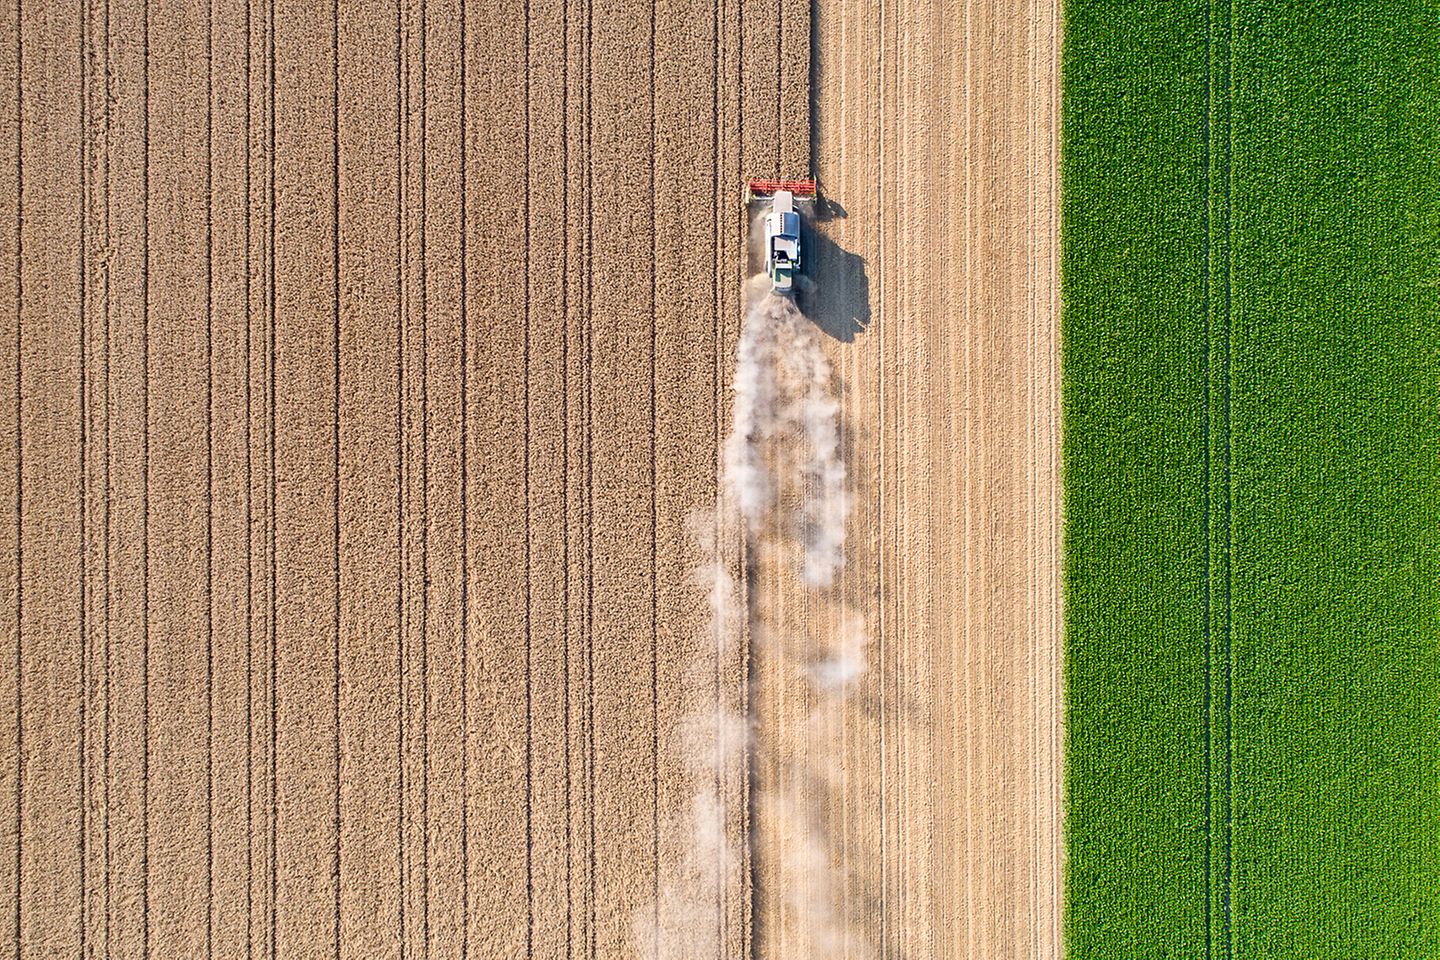 Tractor desplazándose por un campo de trigo dejando una nube de polvo tras de sí